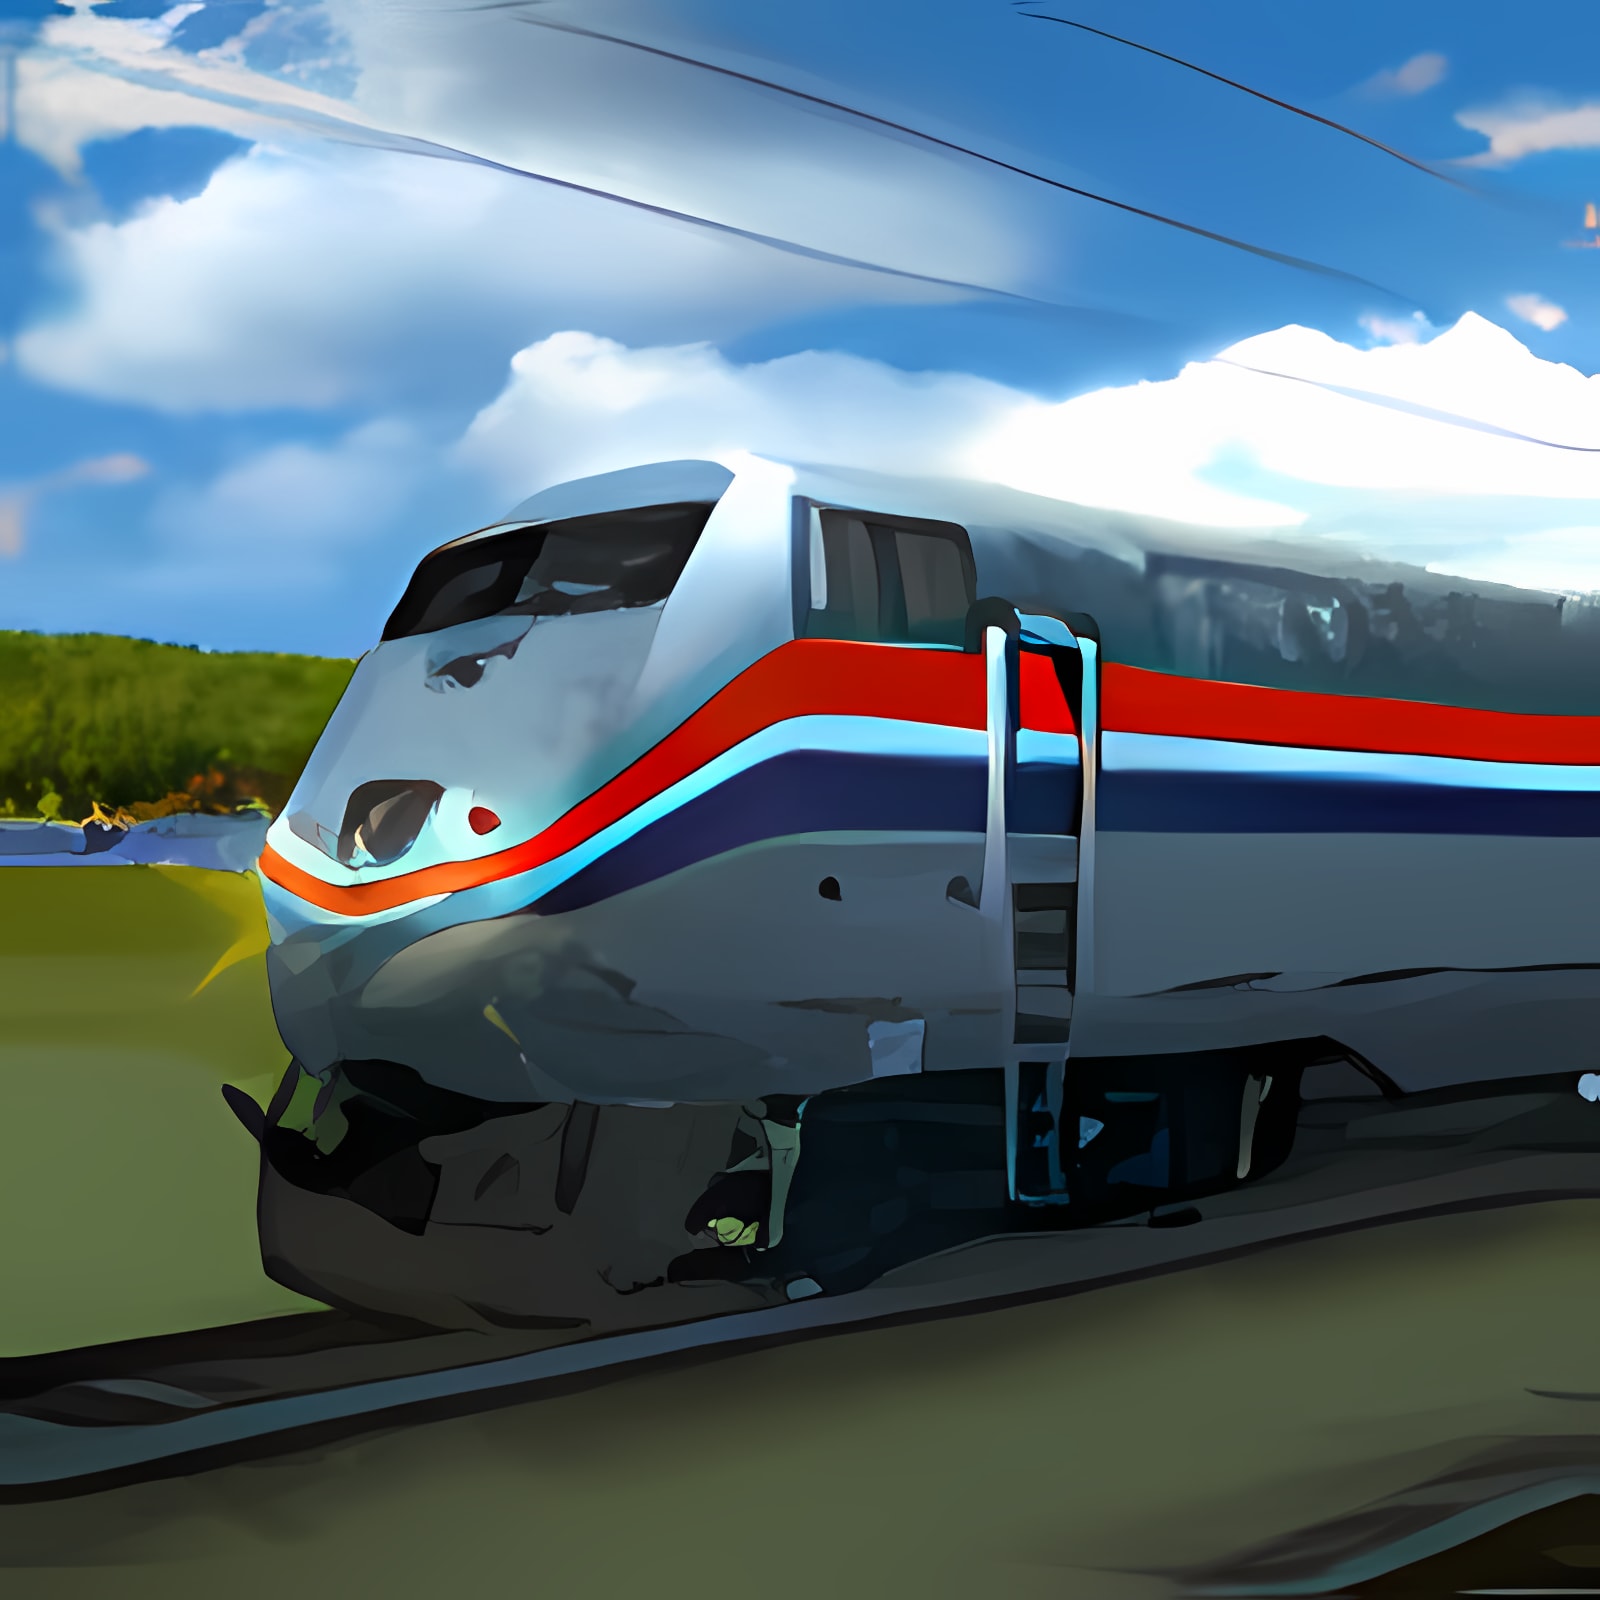 下载 Passenger Train Simulator 安装 最新 App 下载程序